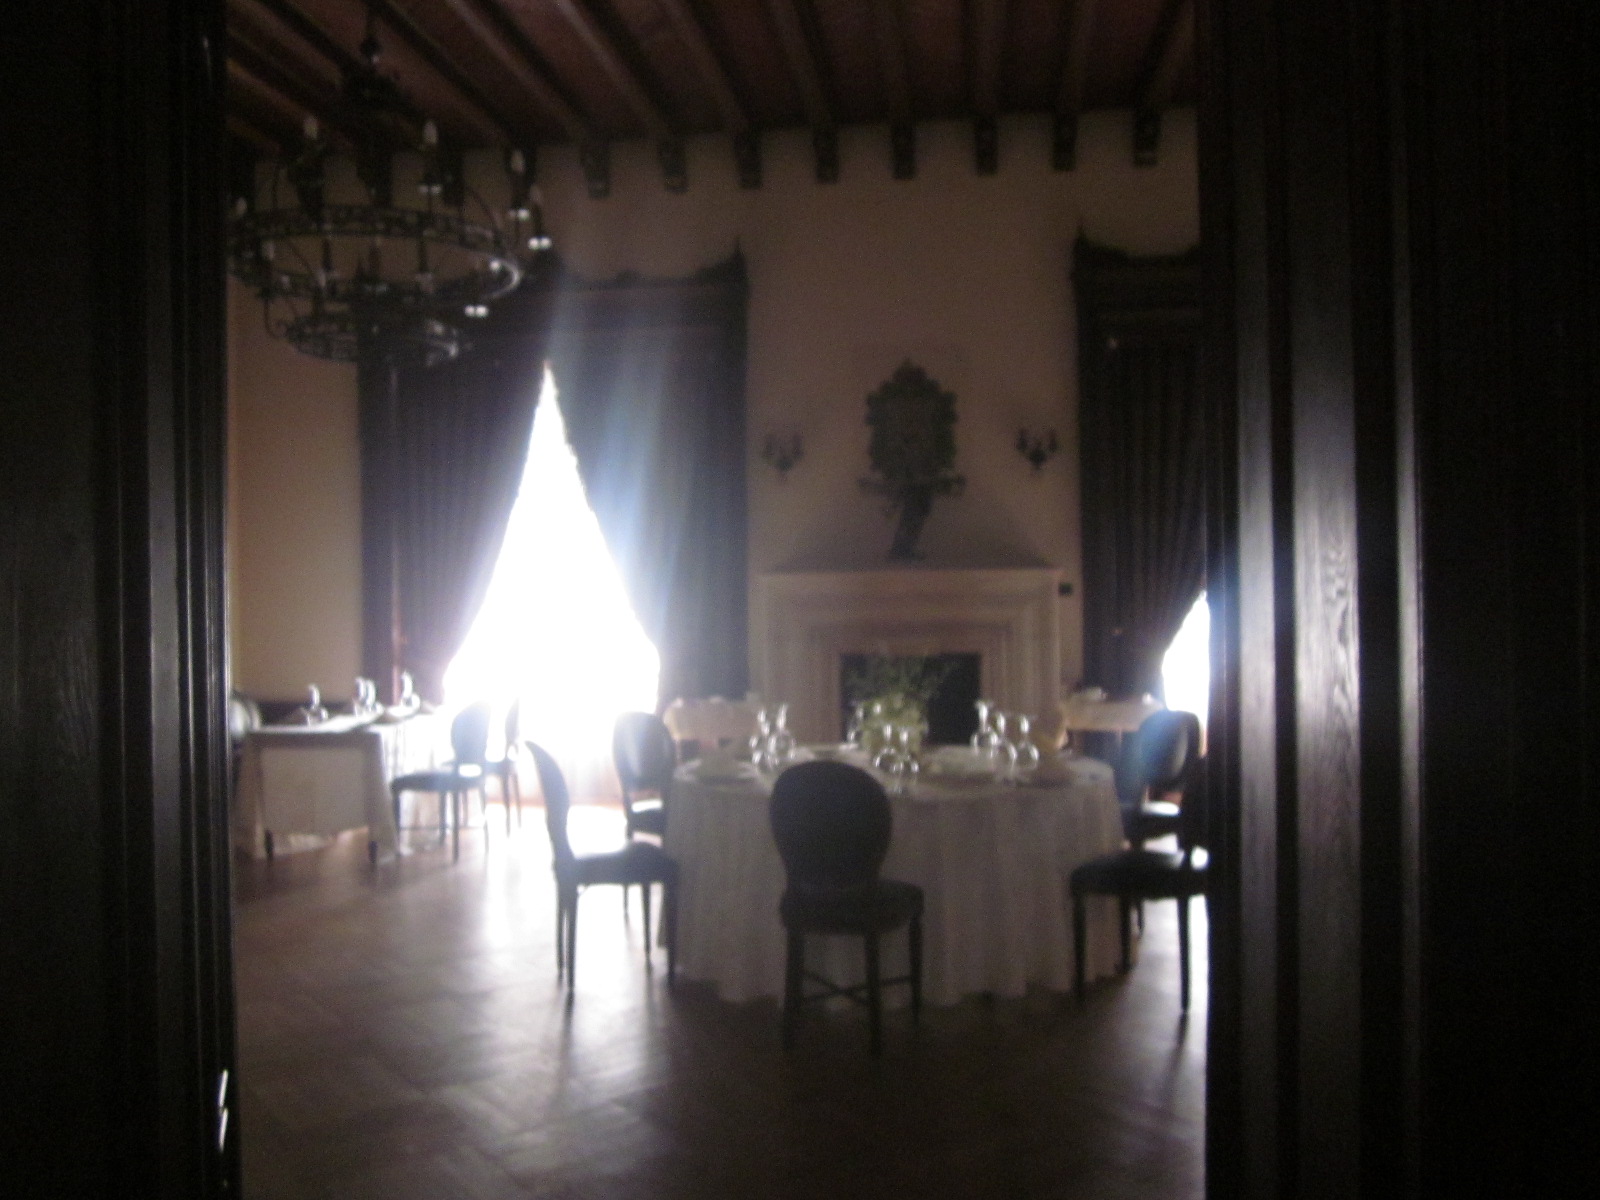 Palatul Mogoșoaia și Palatul Știrbey, 55 de km față de București